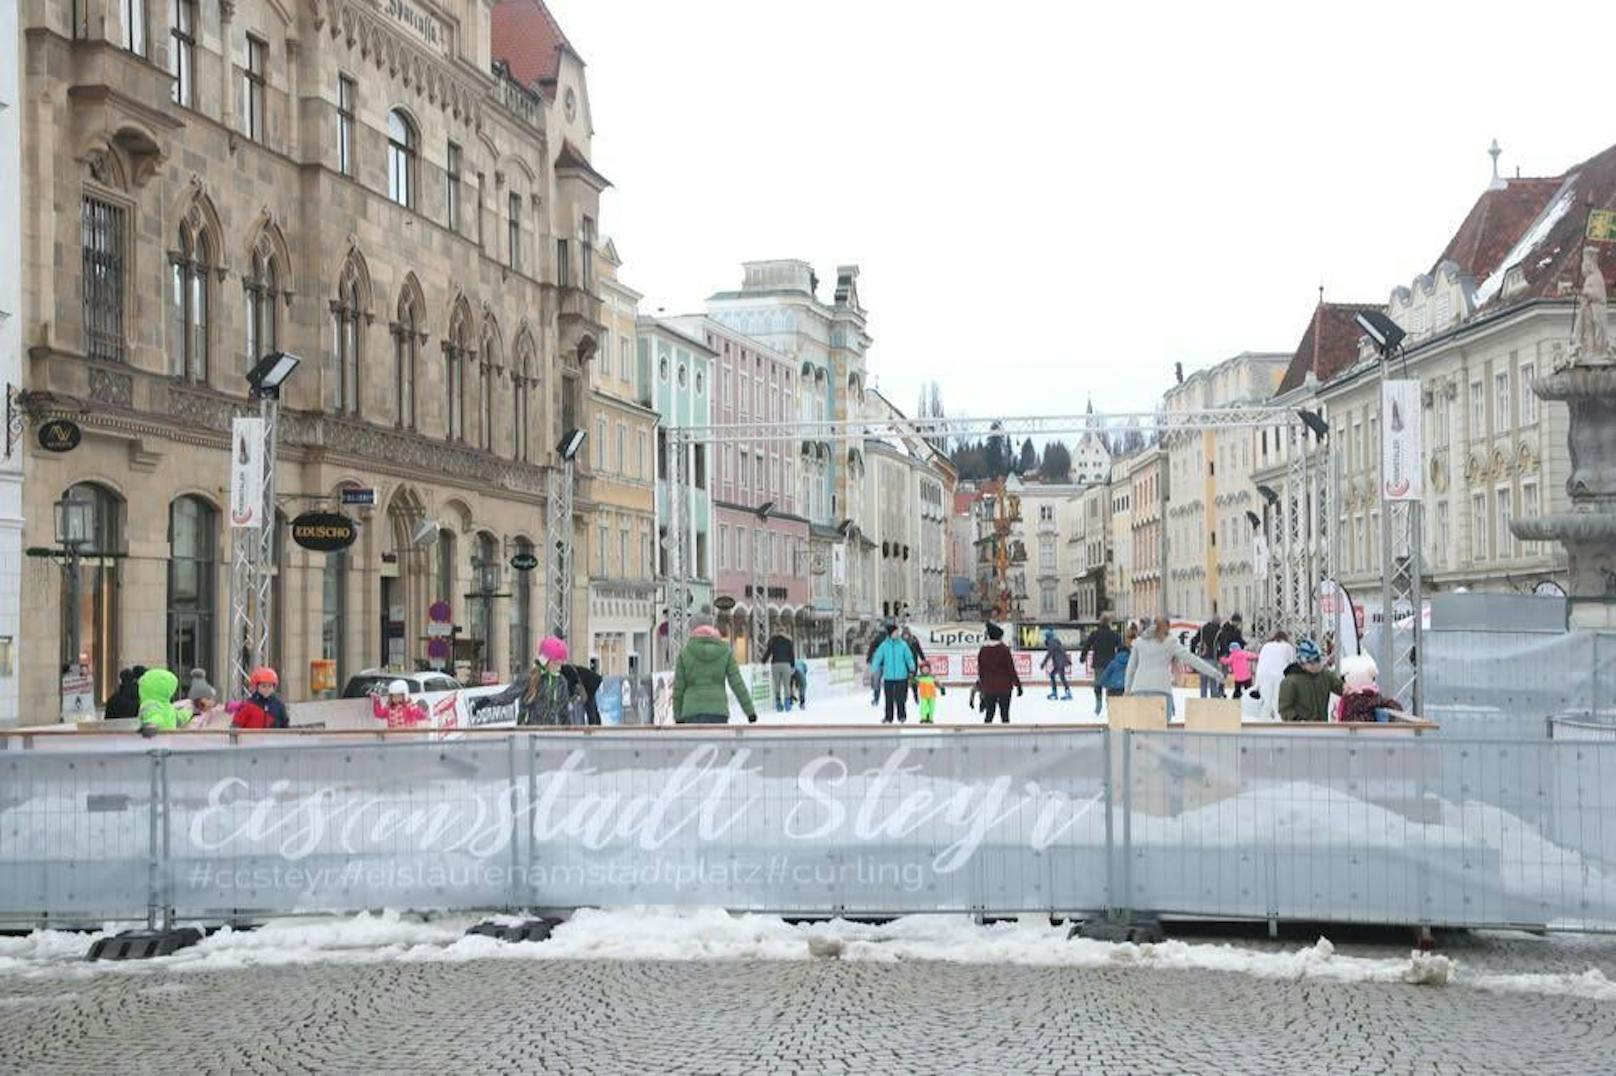 Diesen Winter gibt es kein Eislaufvergnügen in Steyr.